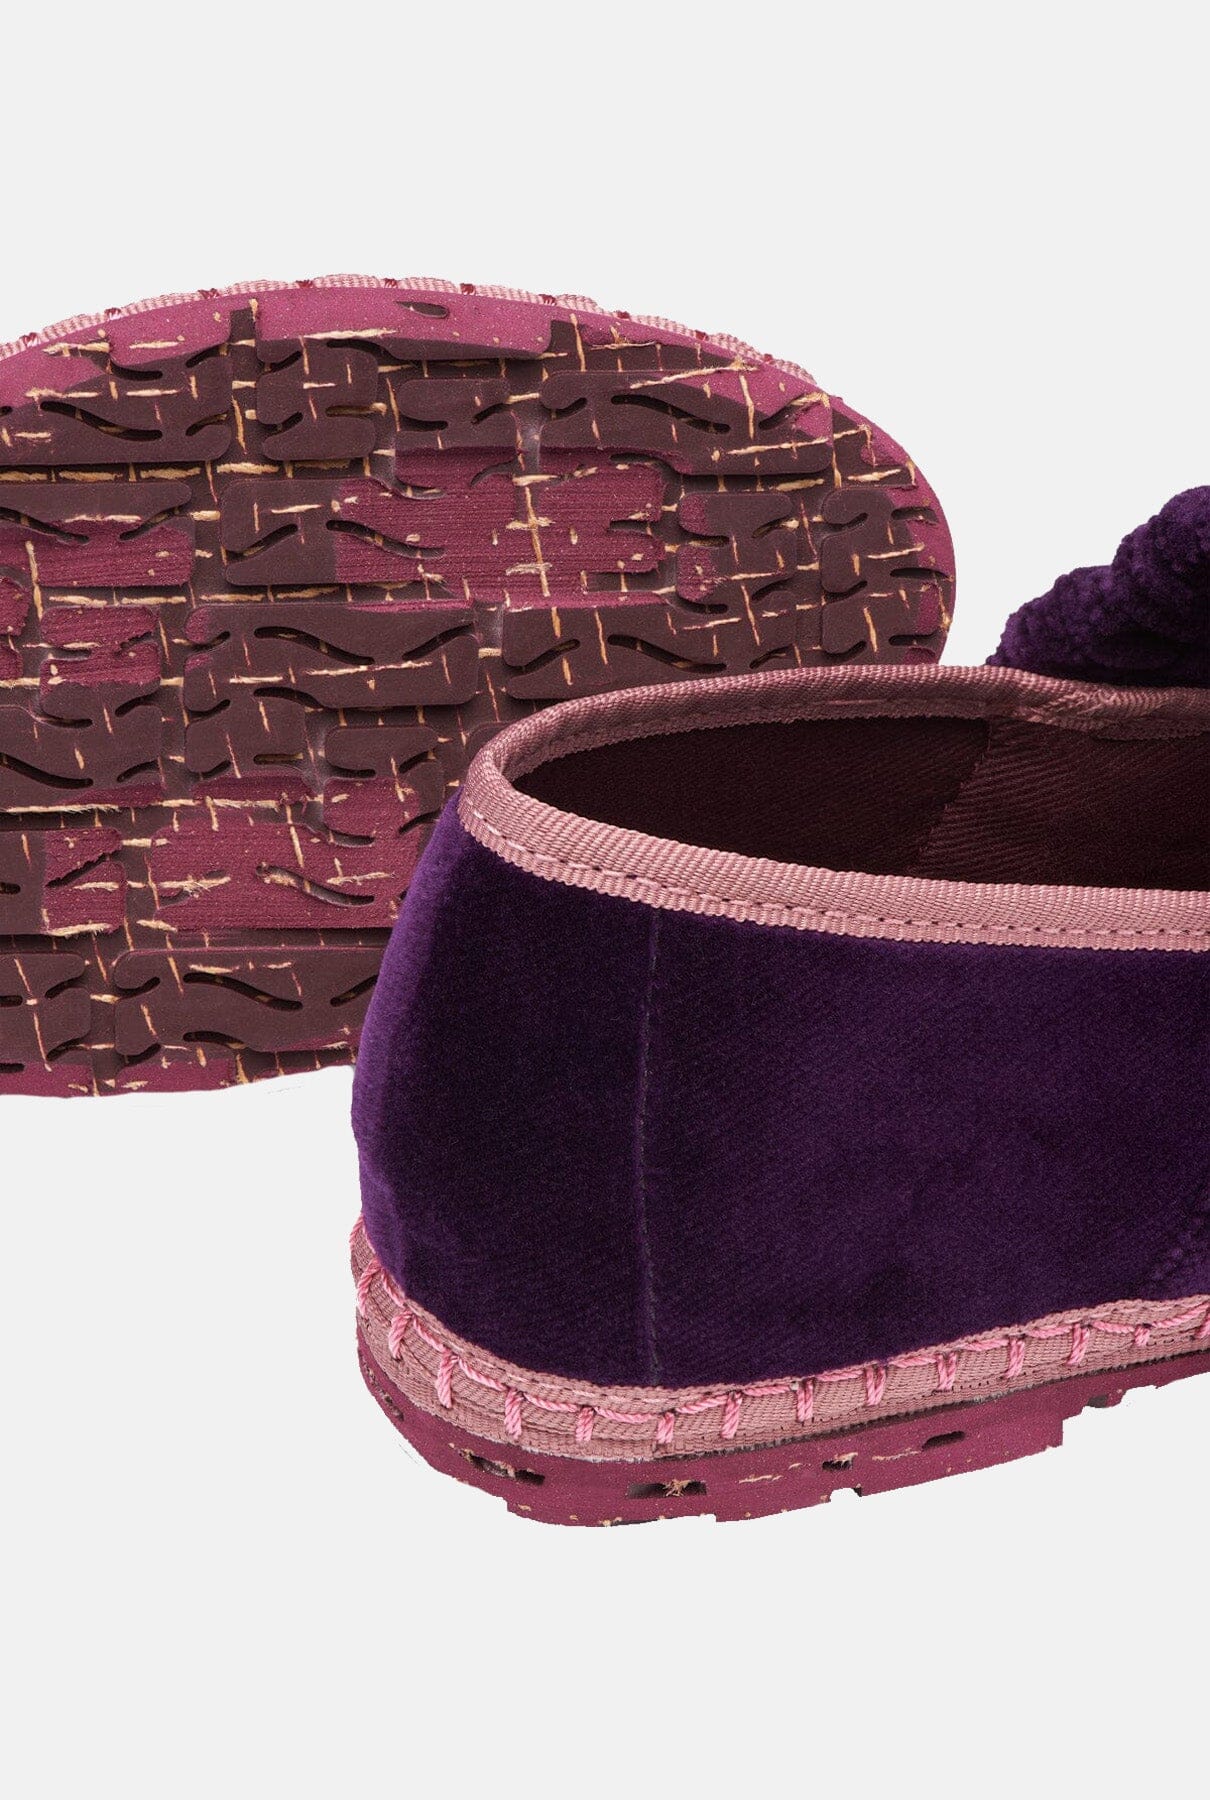 Mafalda Purple Flat shoes Flabelus 